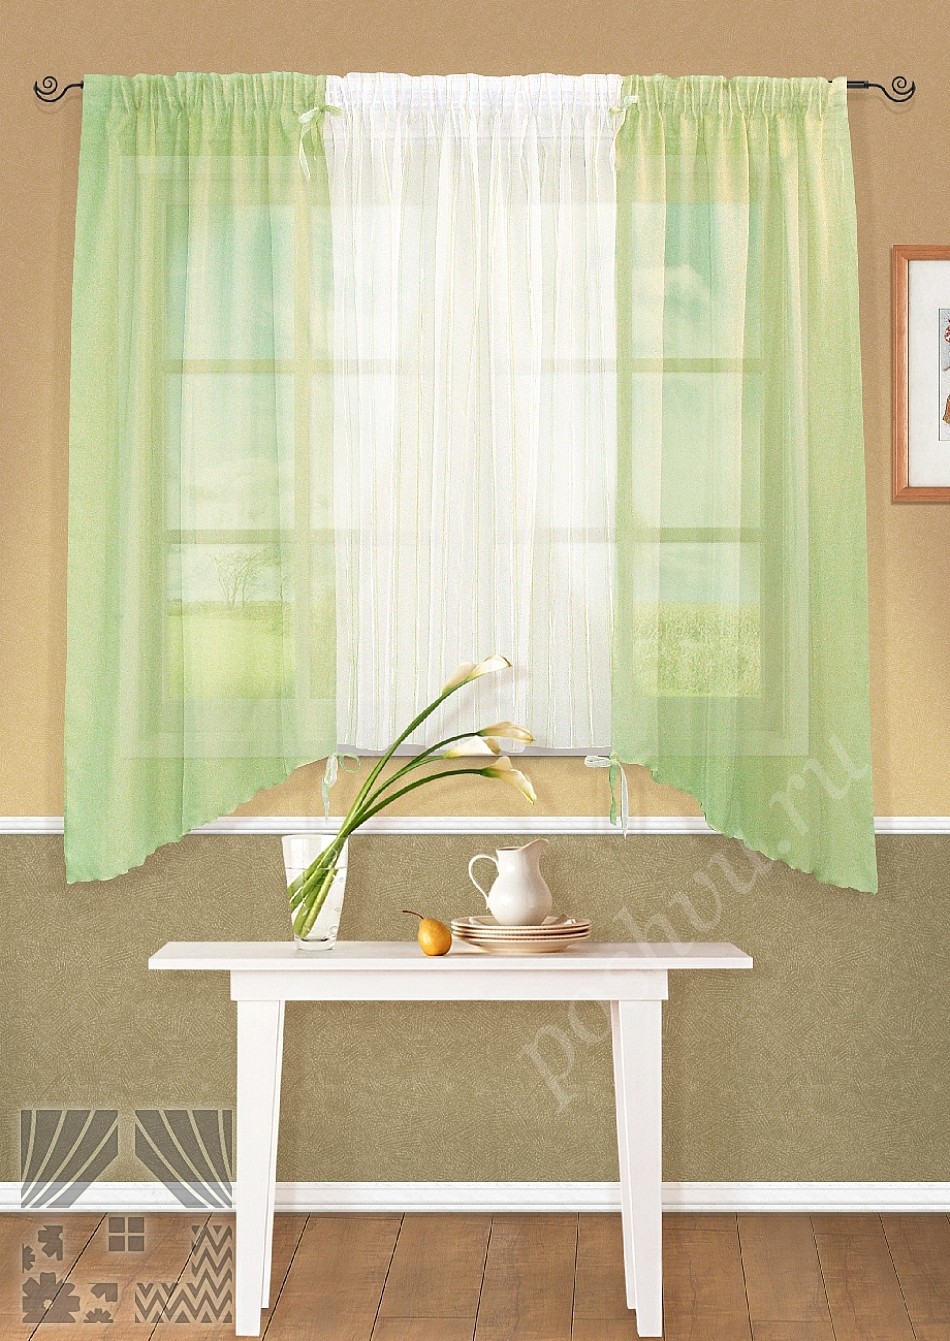 Легкий комплект готовых штор зеленого цвета с белой вставкой посередине для кухни